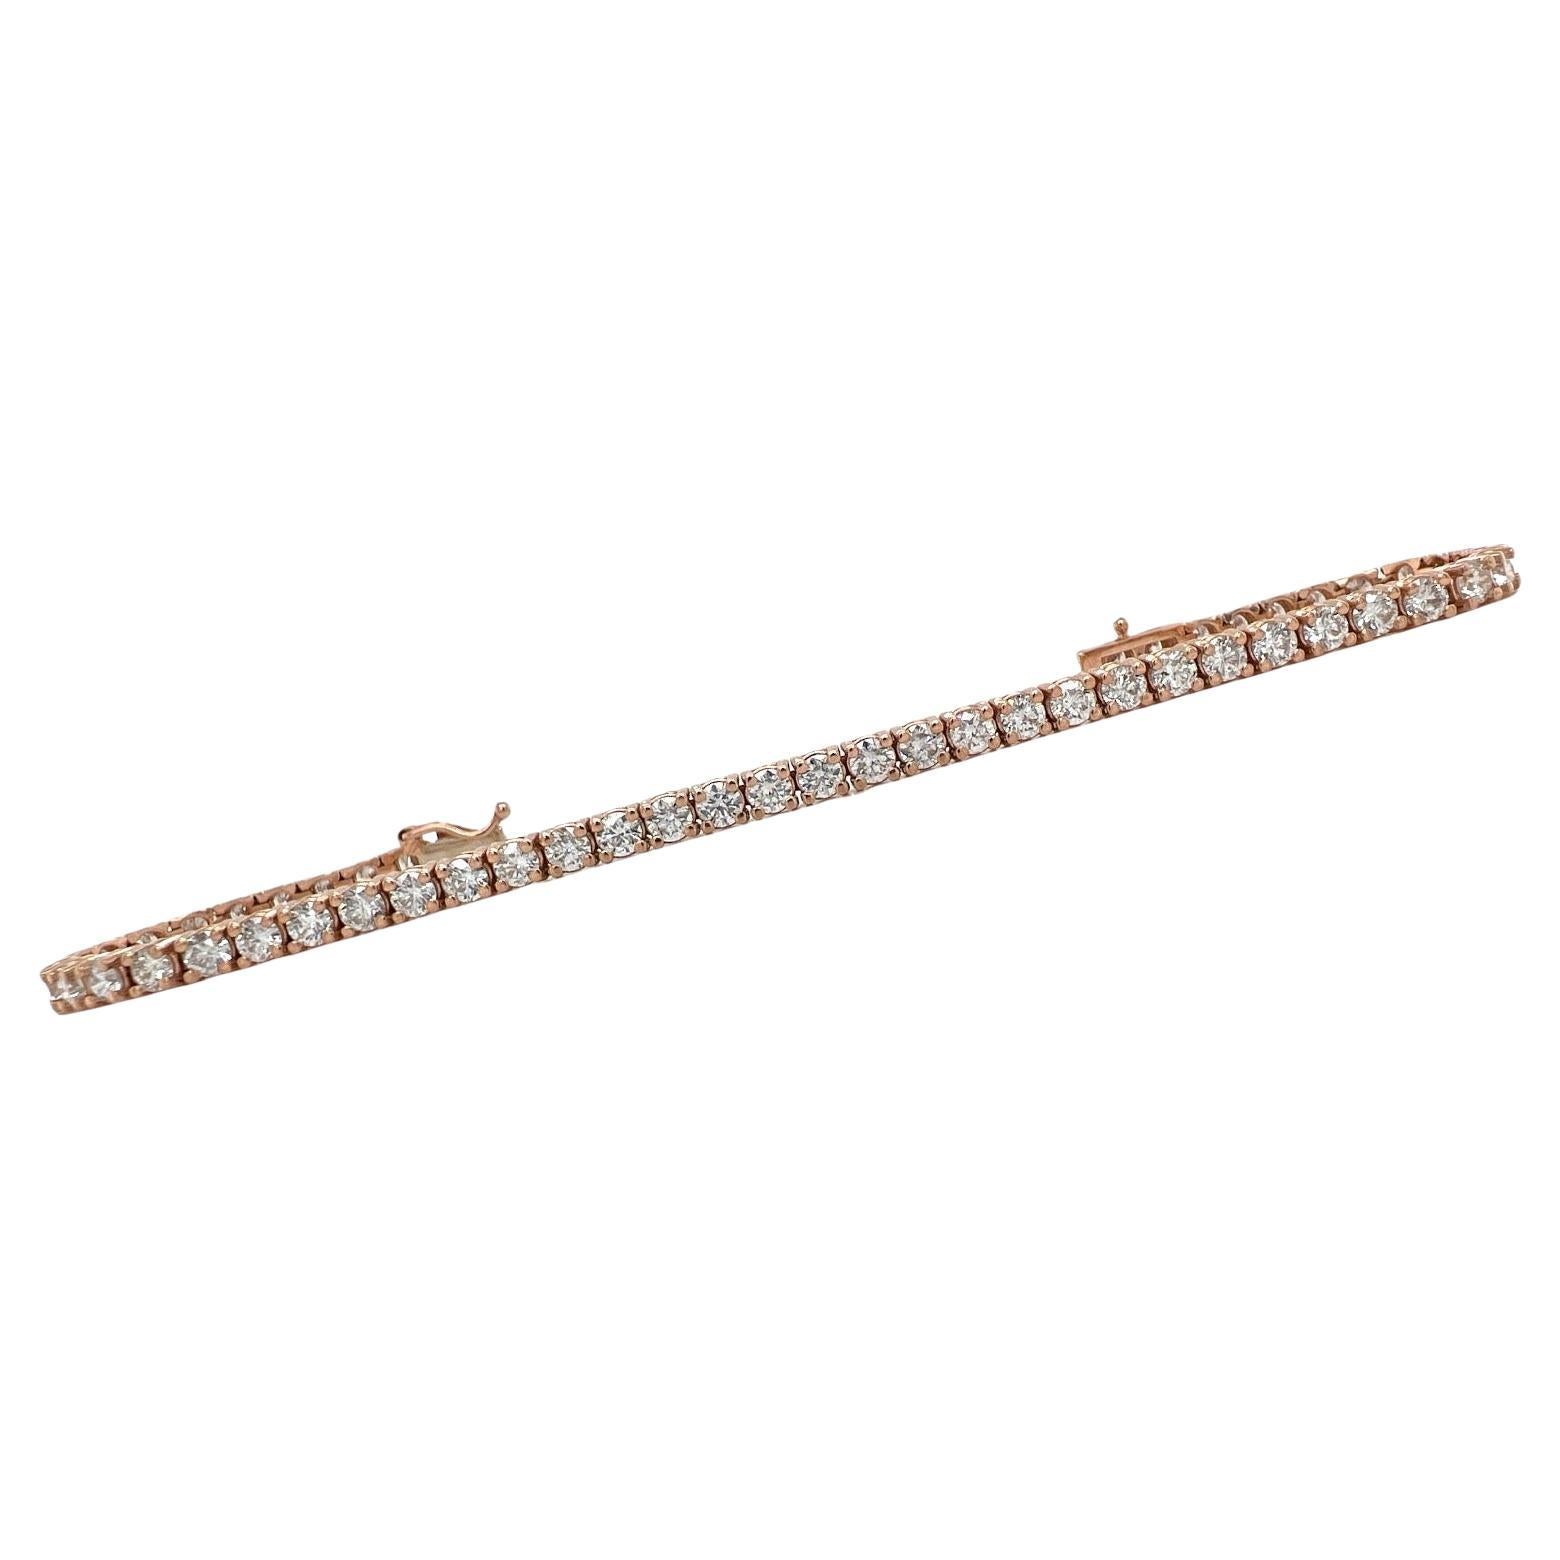 Bracelet tennis en or rose avec diamants ronds brillants de 5,08 carats poids total, neuf